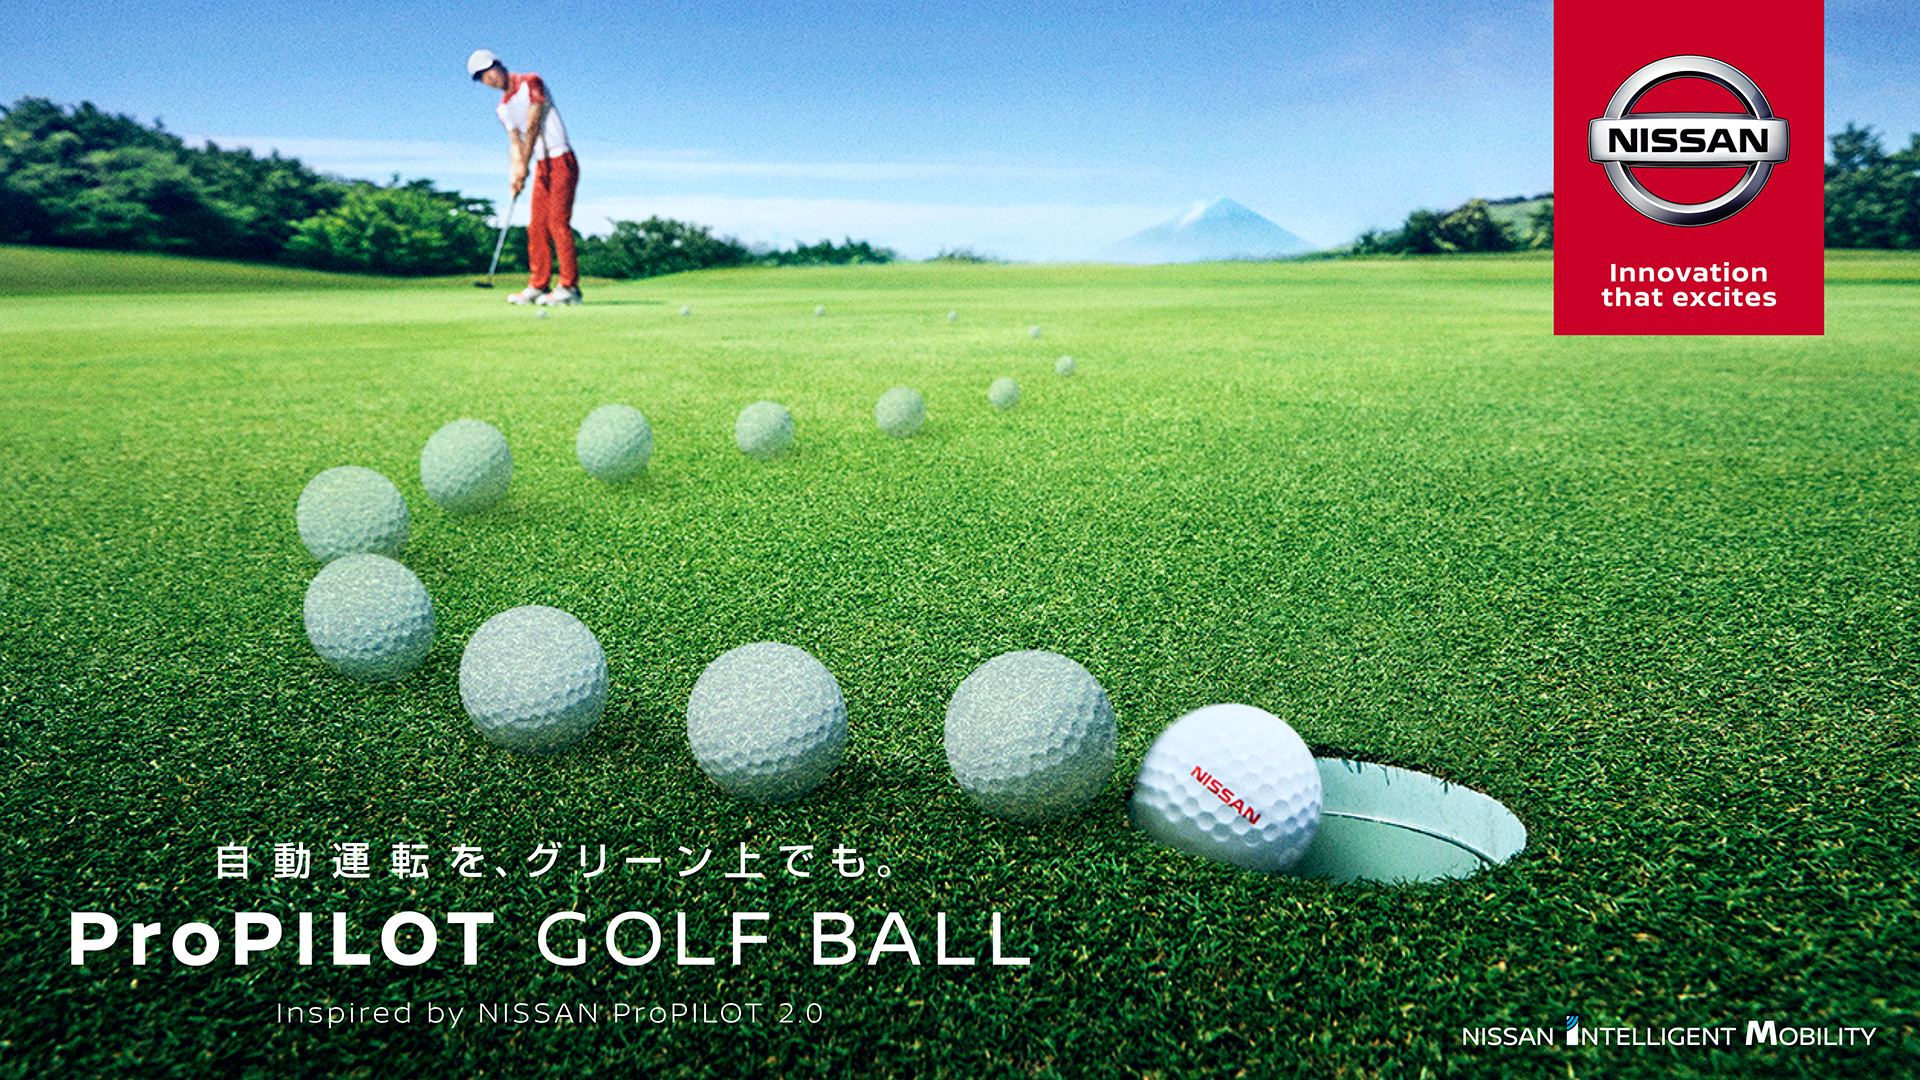 日産自動車 世界初の運転支援システムをゴルフボールに着想 確実にカップインするゴルフボール Propilot Golf Ball 動画公開 日産自動車株式会社 日本マーケティング本部のプレスリリース